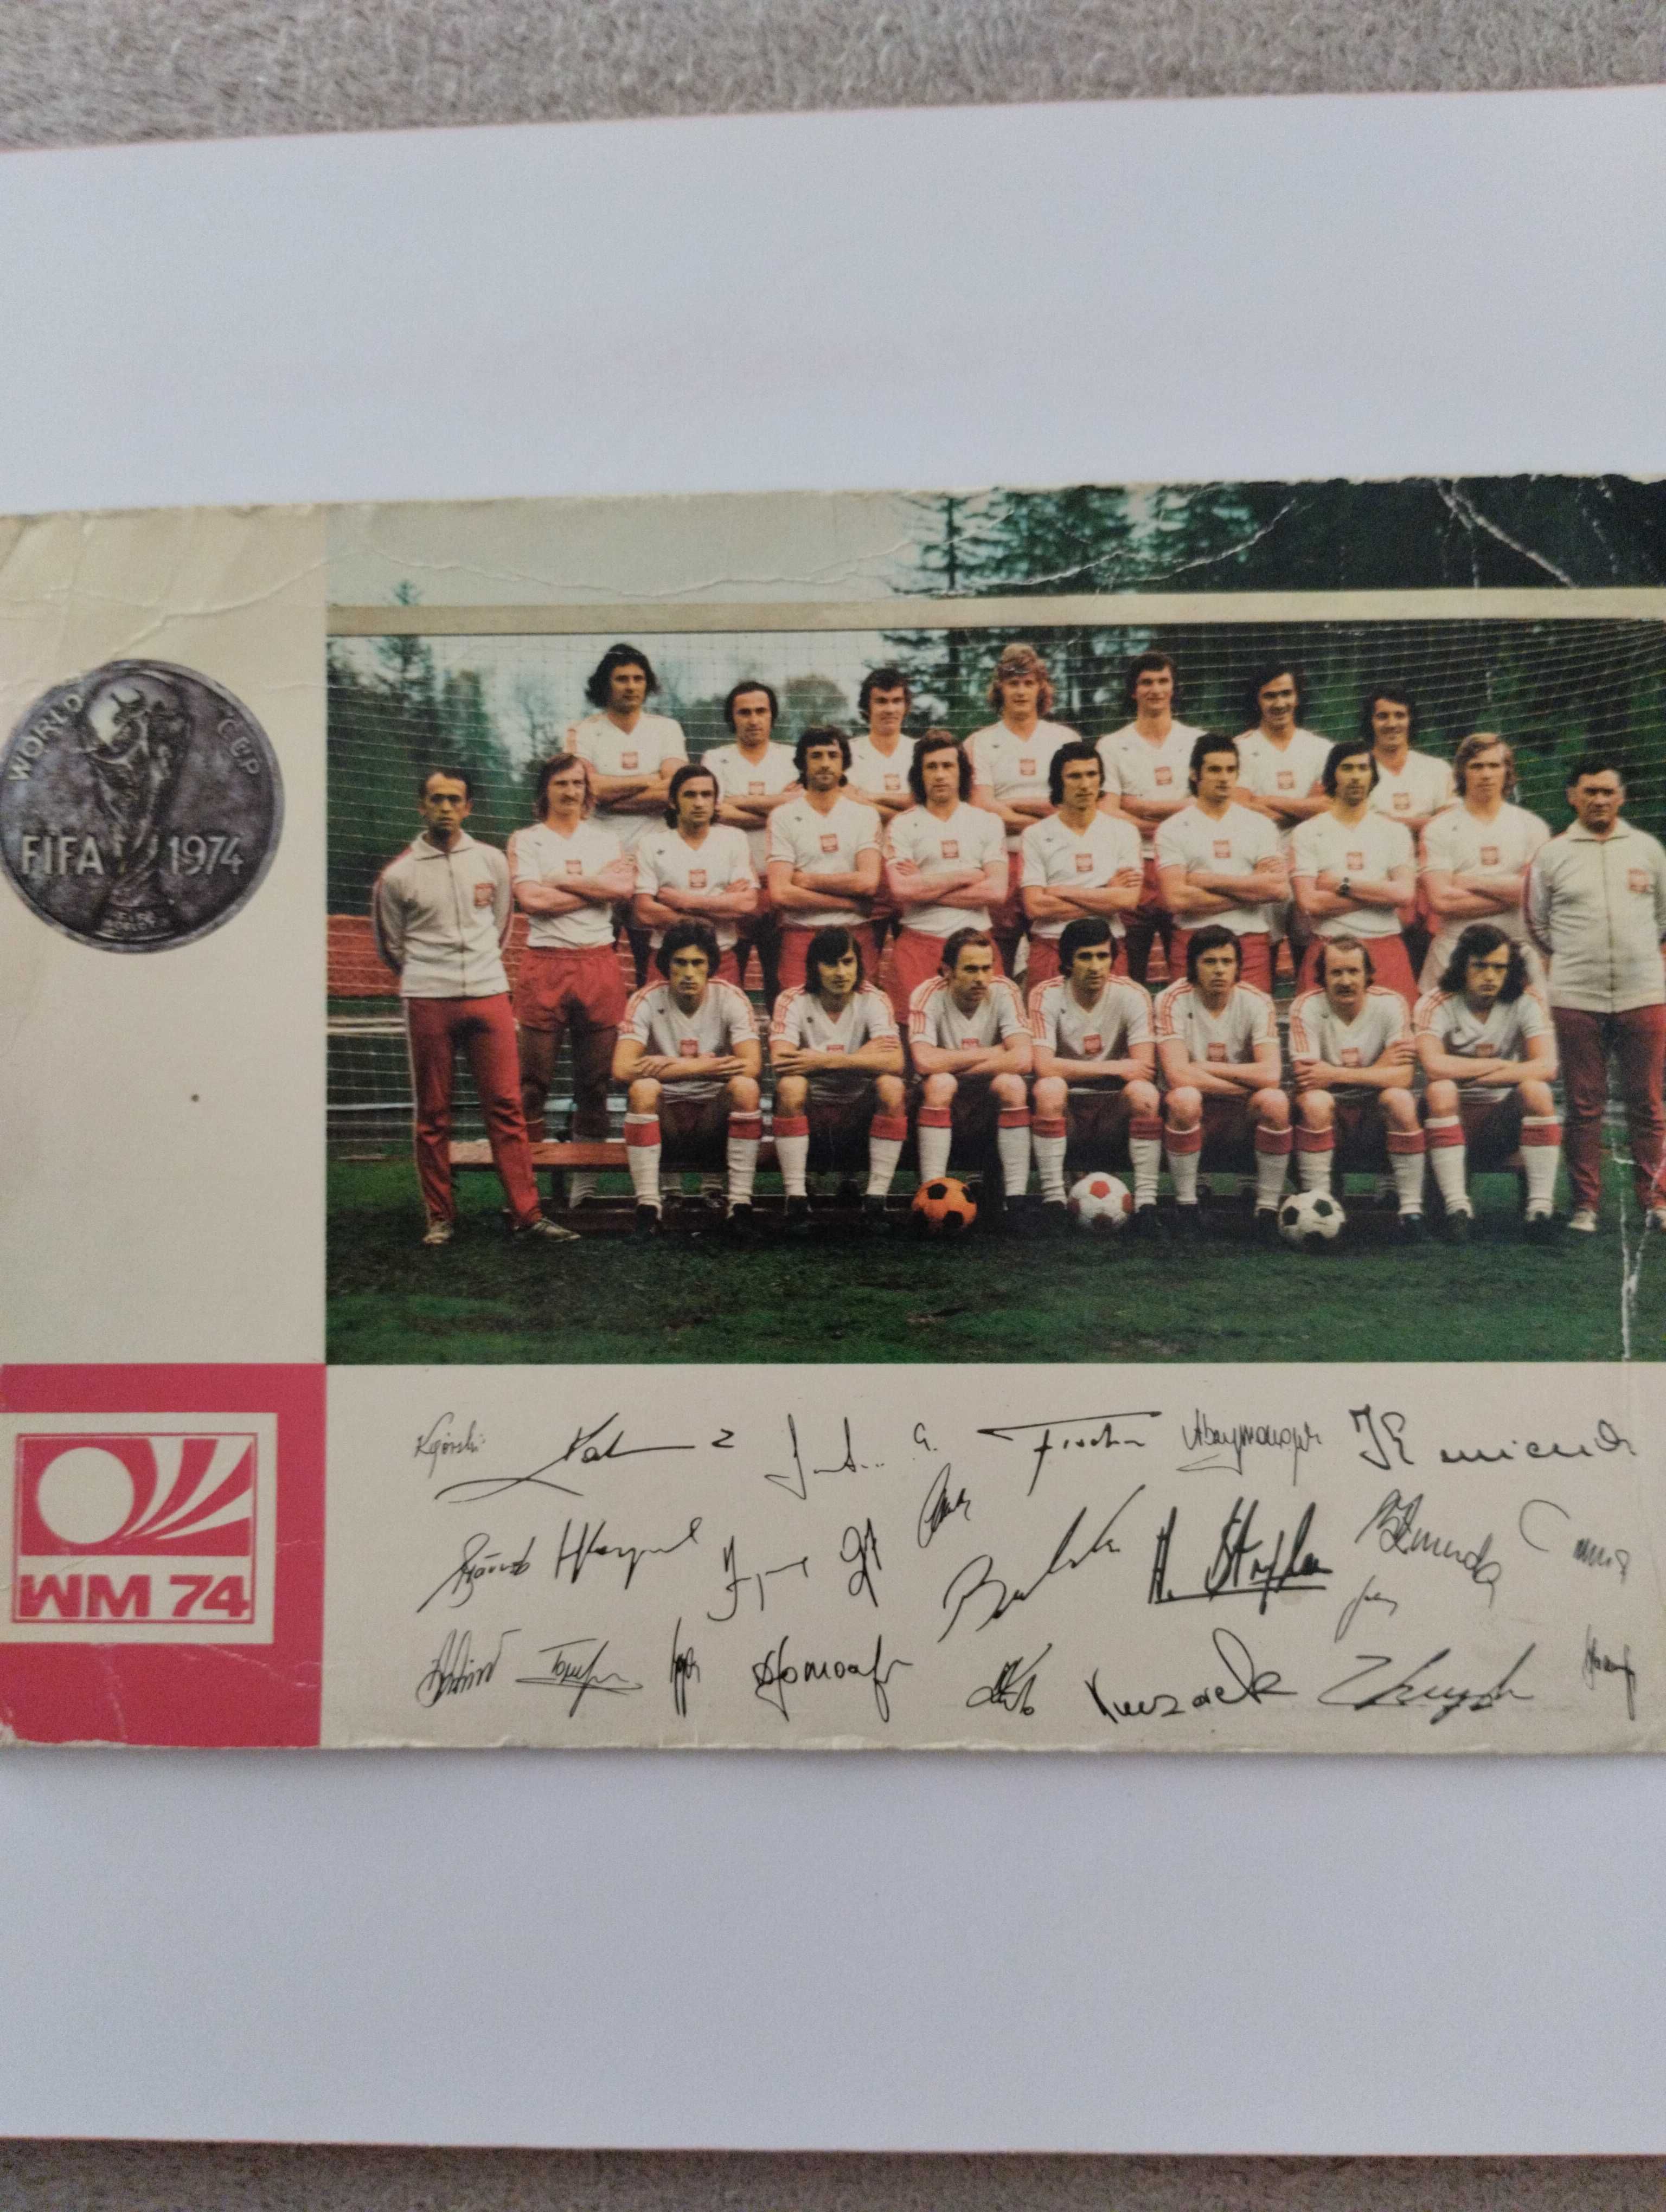 Zdjęcie reprezentacji x mistrzostwa świata w piłce nożnej RFN 1974